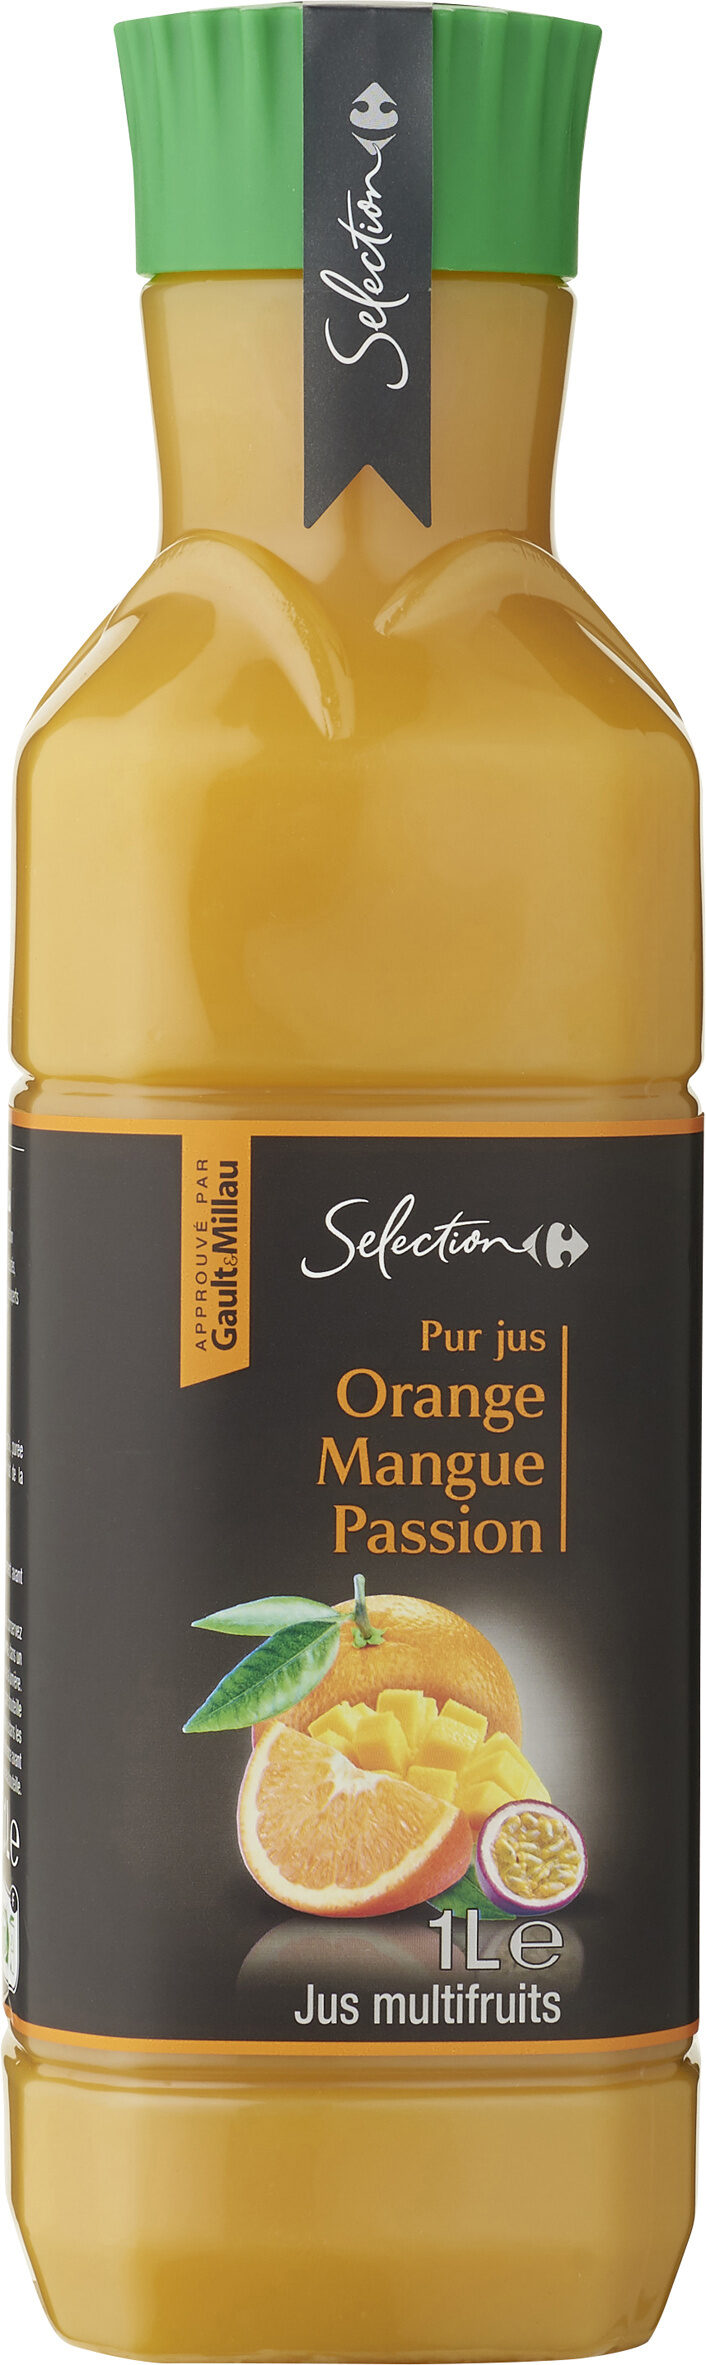 Pur Jus Orange Mangue Et Passion - Producte - fr